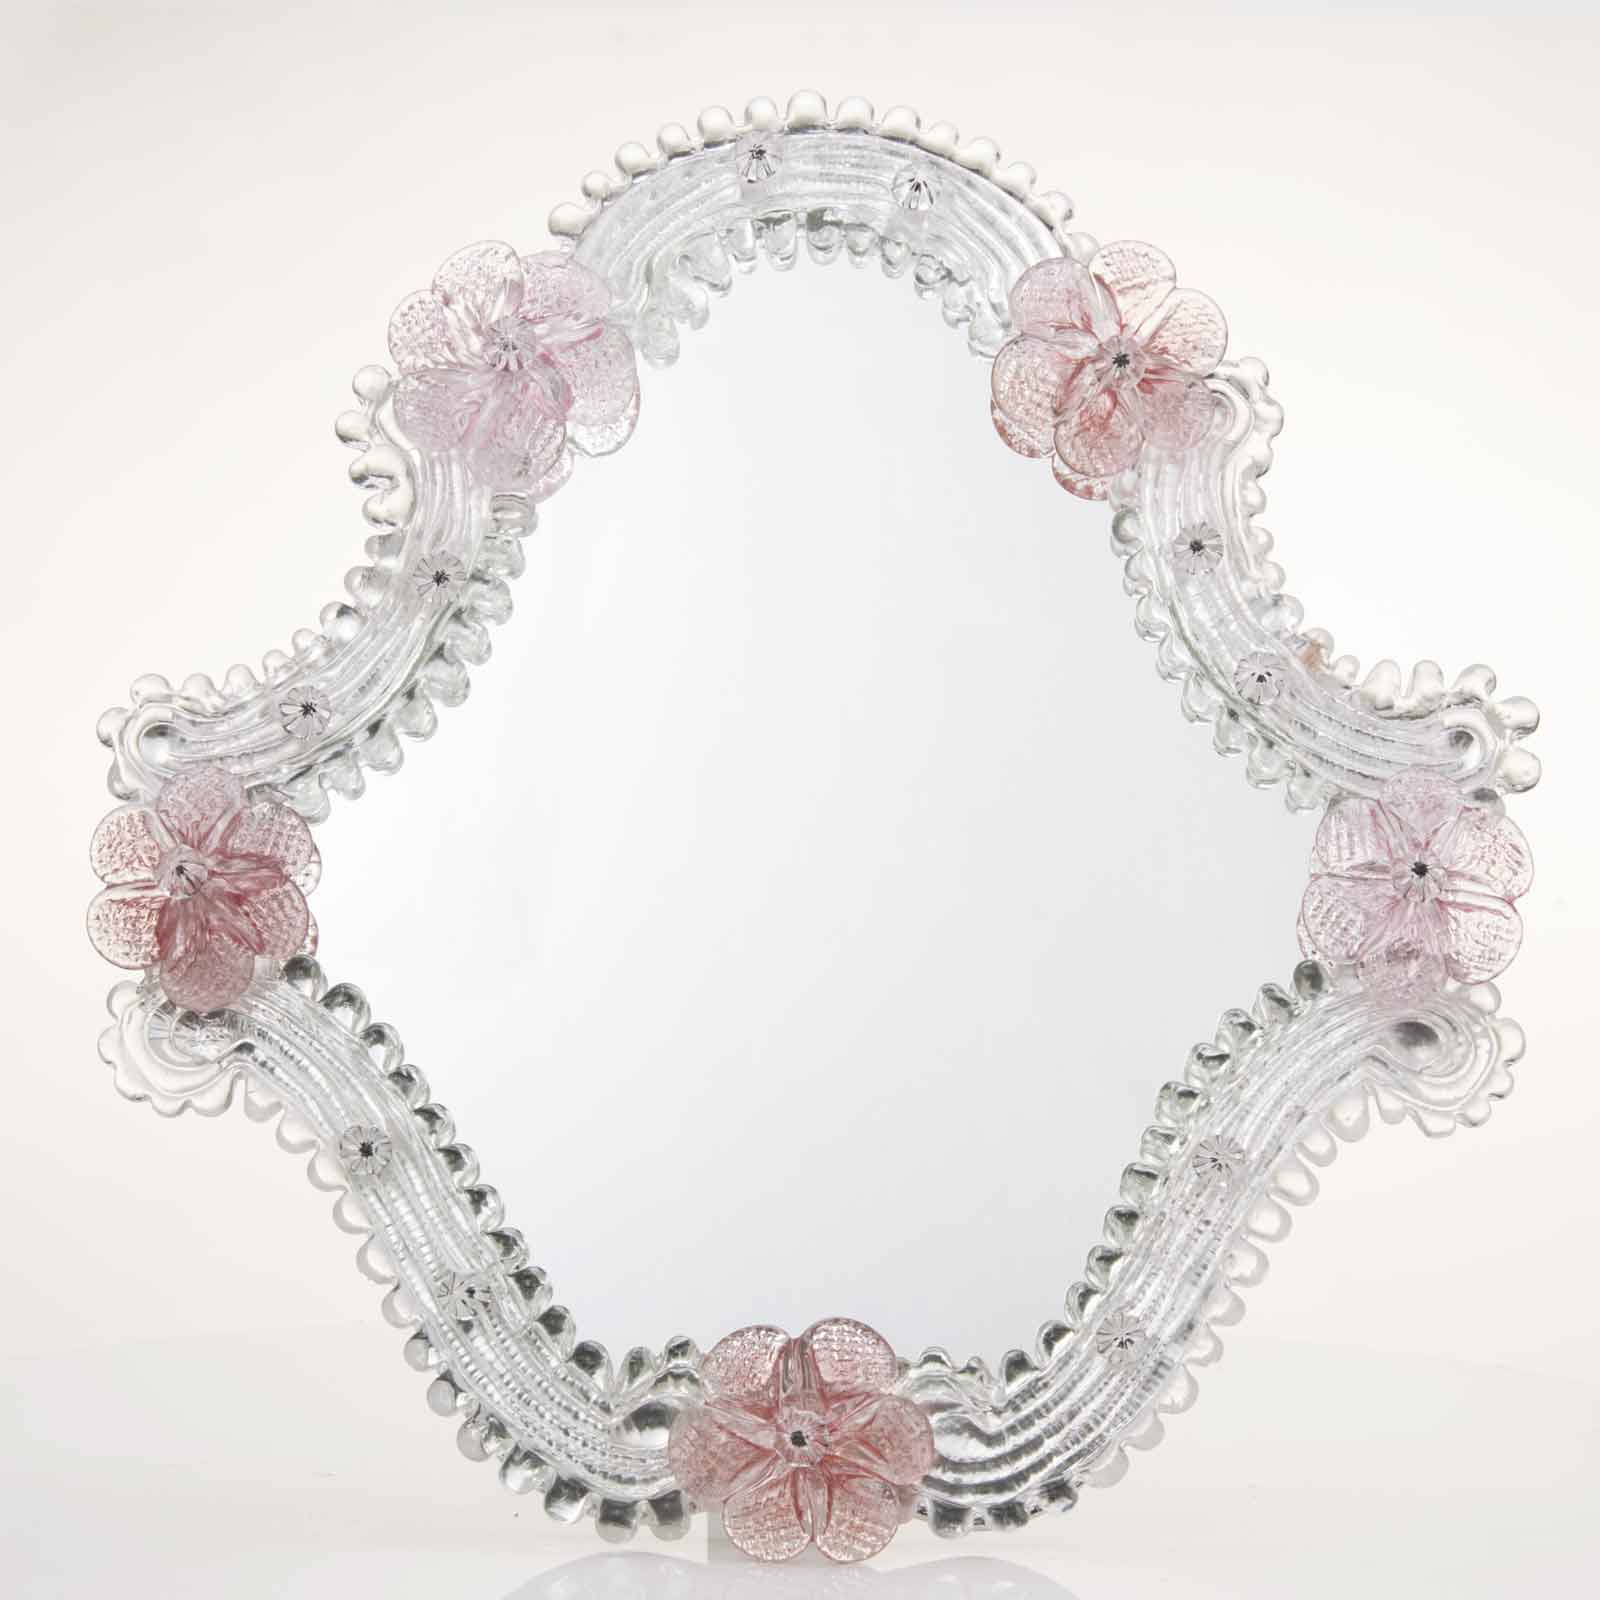 Elegante specchio artigianale da tavolo "Lavanda" con riflessi Argento e dettagli floreali di colore rosa